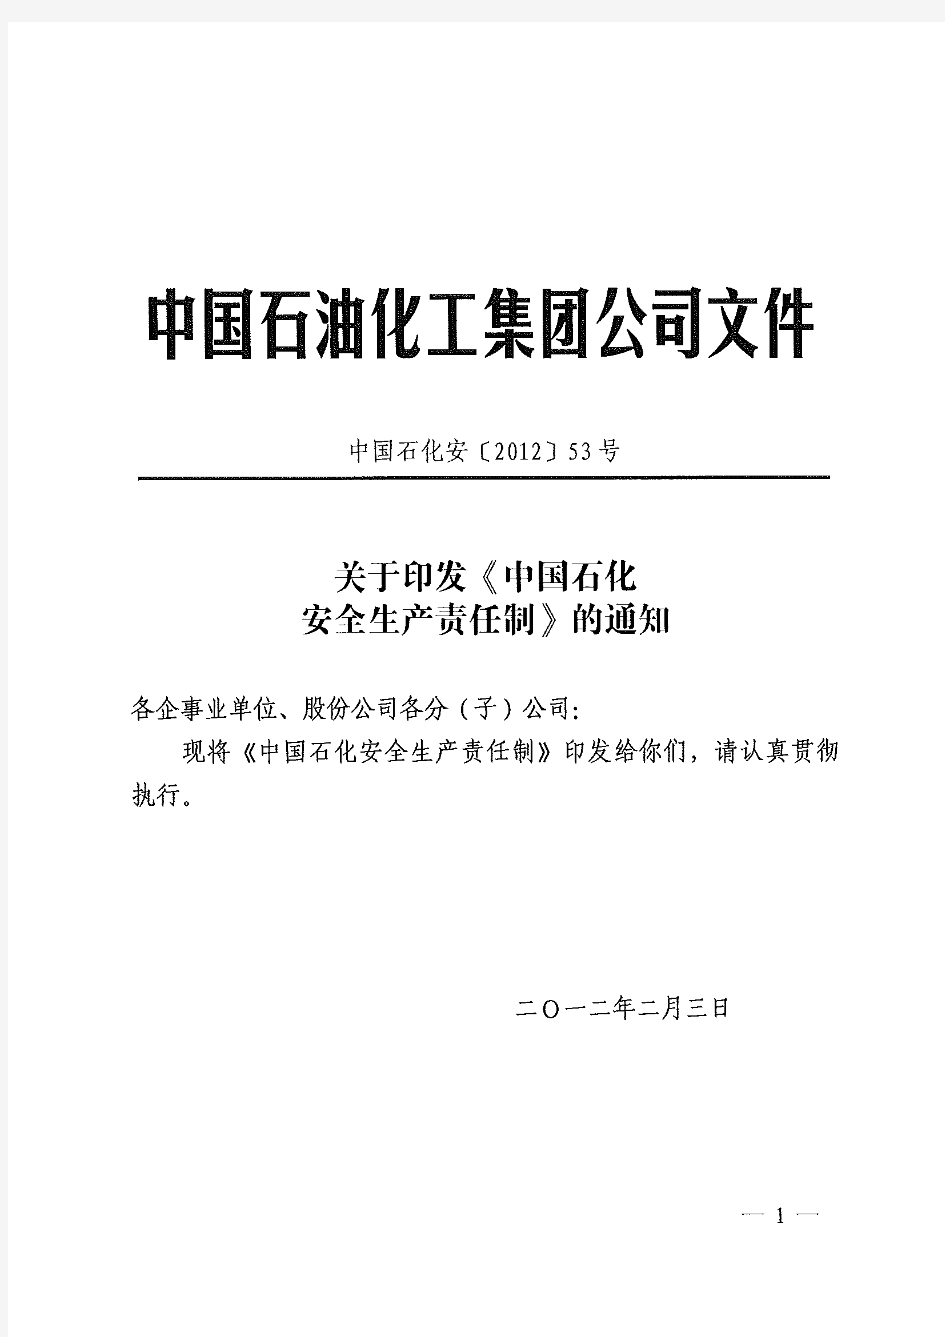 中石化安[2012]53号《中国石化安全生产责任制》